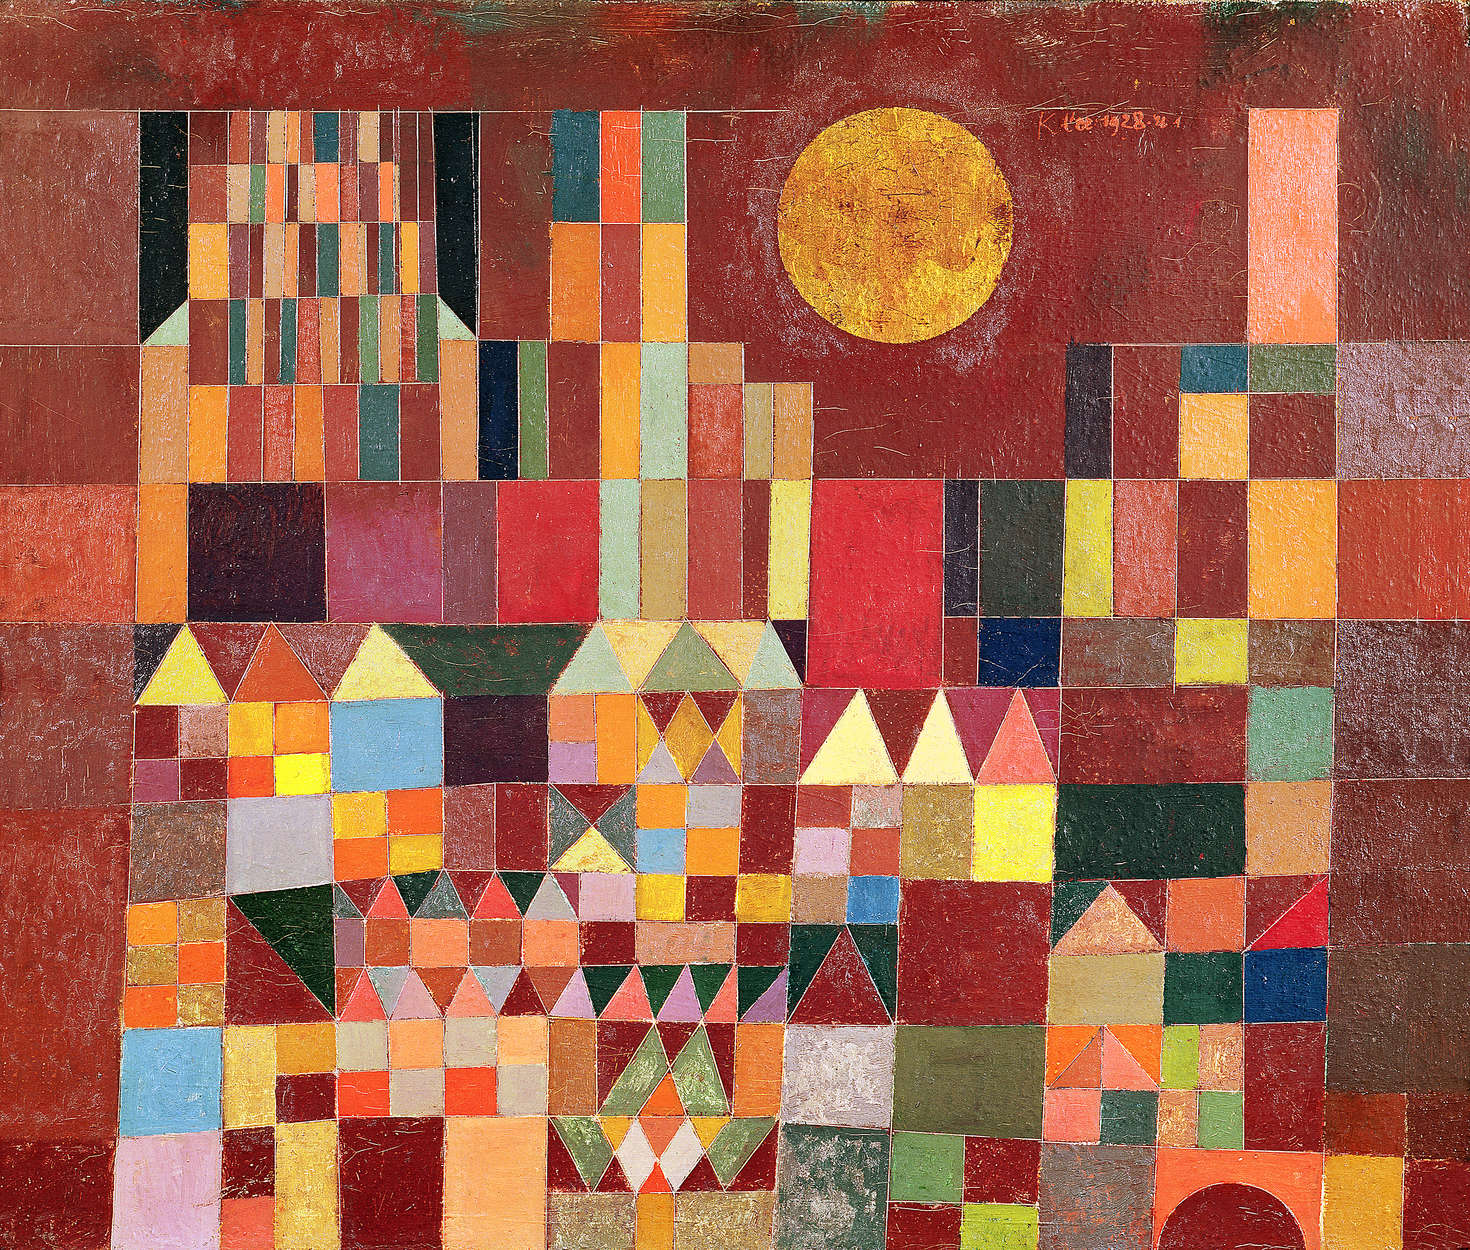             Muurschildering "Kasteel en zon" van Paul Klee
        